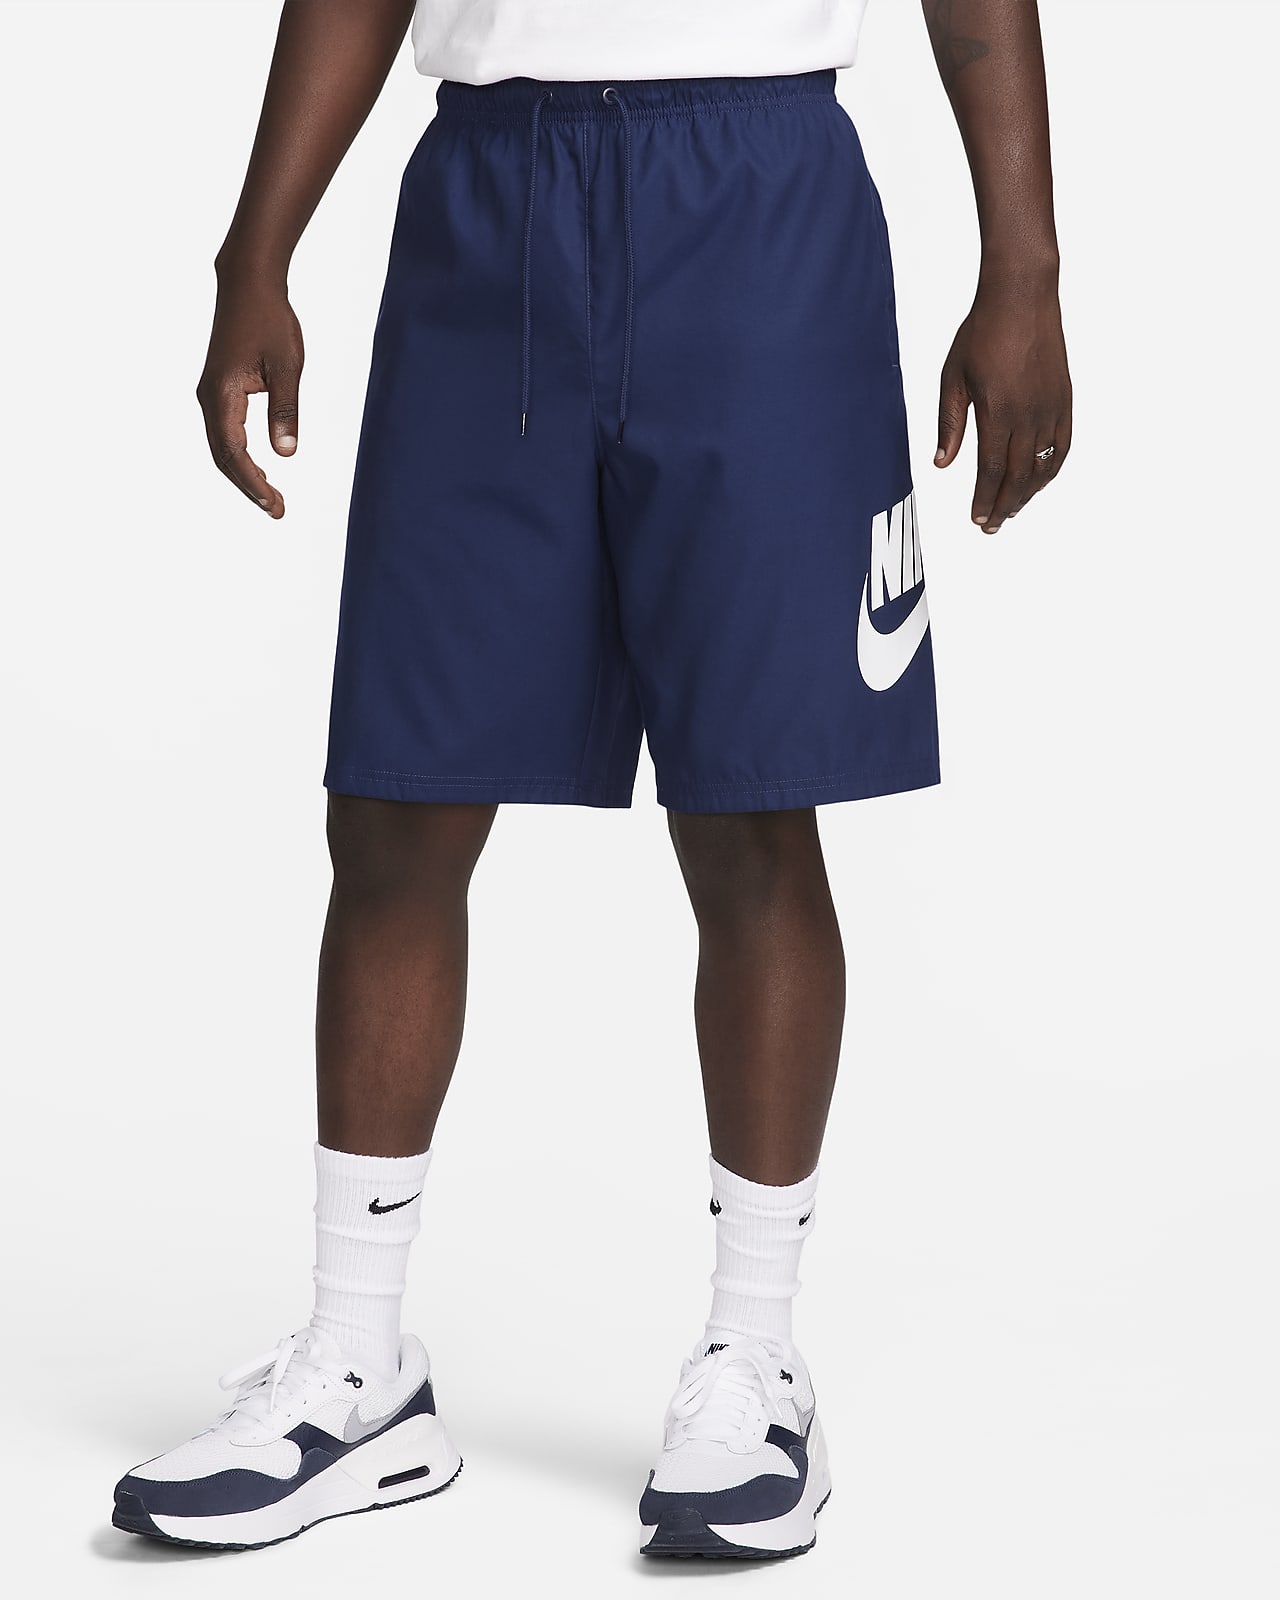 Vävda shorts Nike Club för män